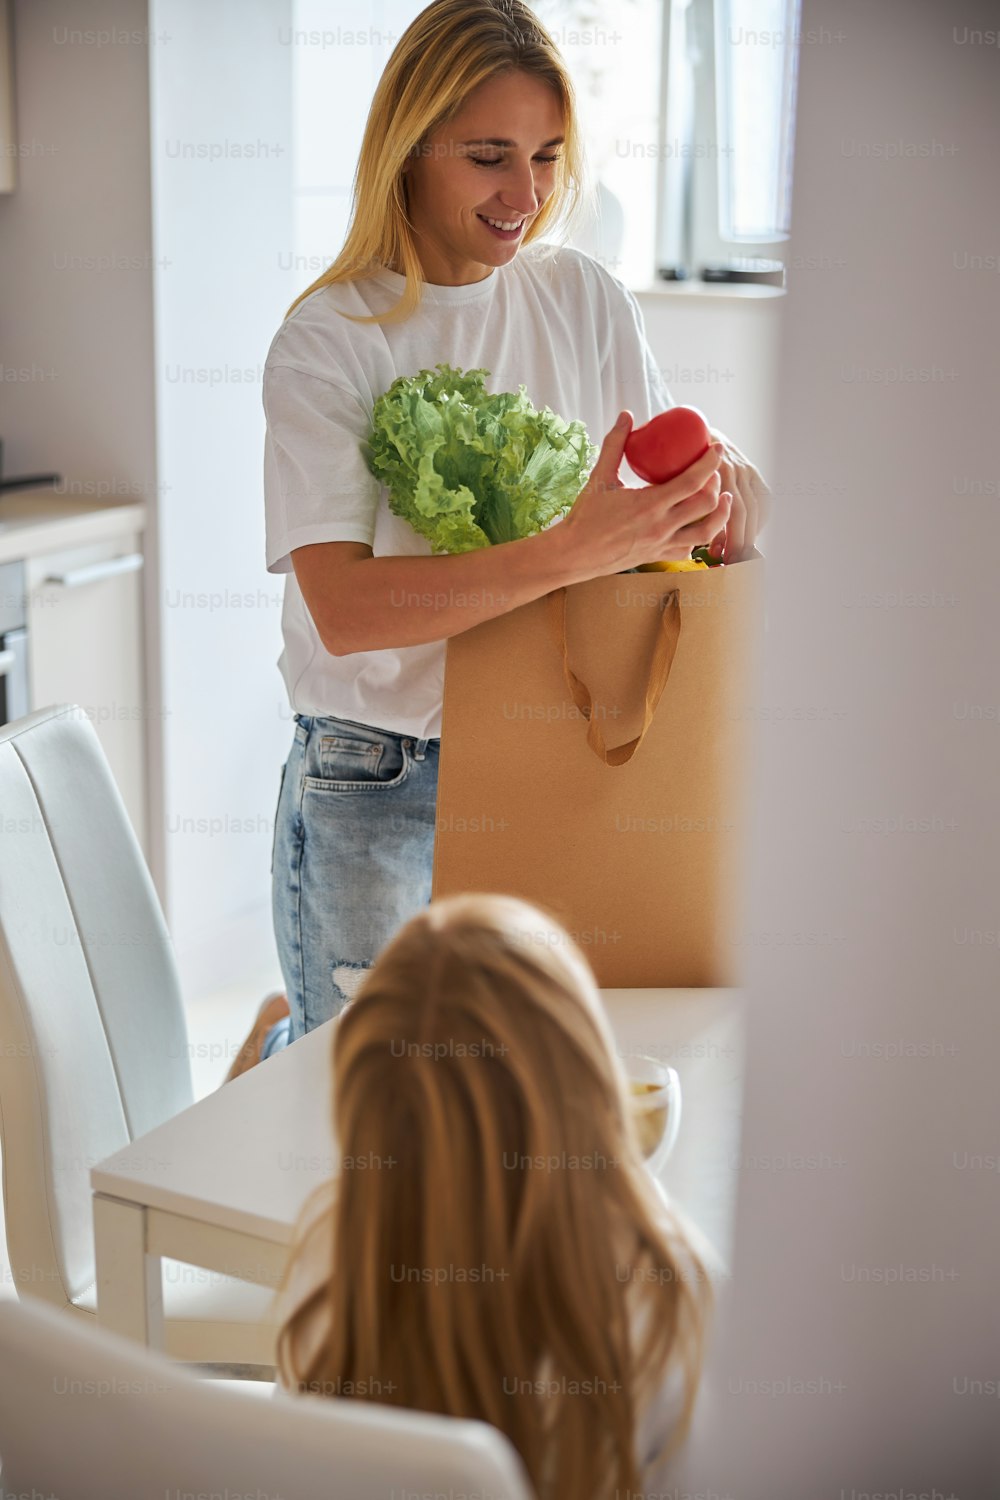 Erwachsene kaukasische schöne Frau, die am weißen Küchentisch mit Papiereinkaufstüte steht und Gemüse in den Händen hält